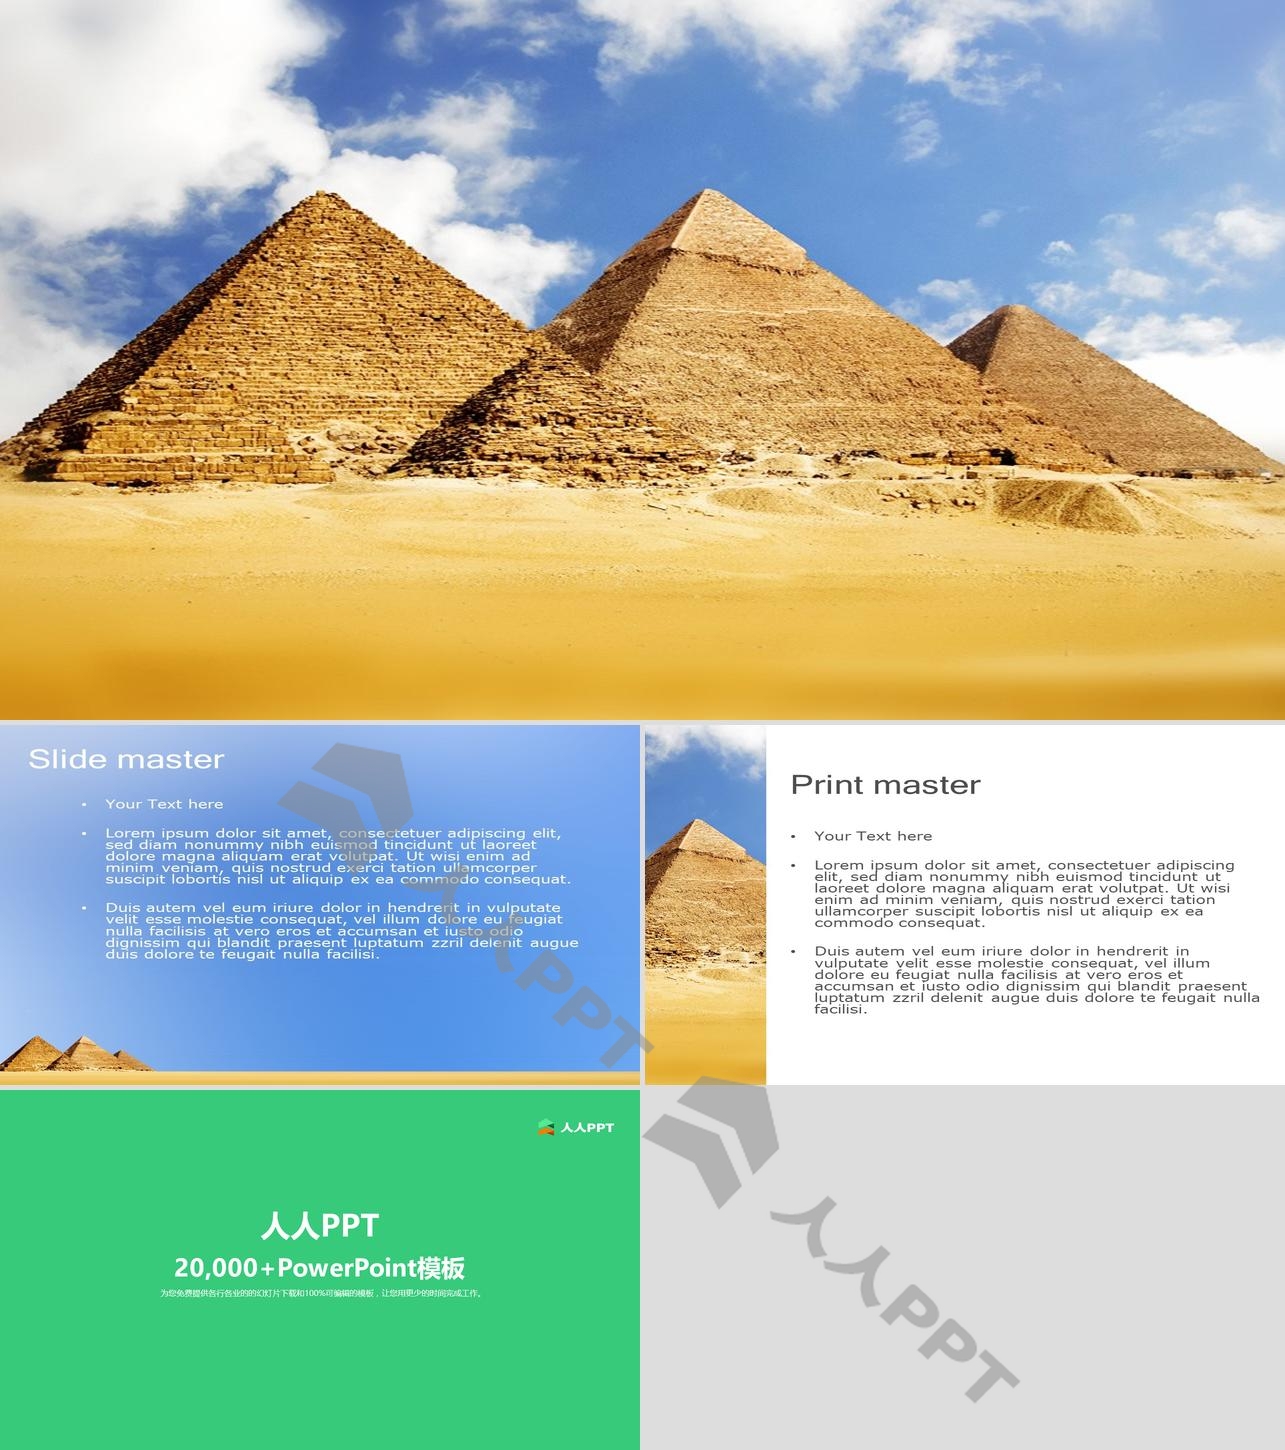 蓝天白云下的埃及金字塔背景的PPT模板长图